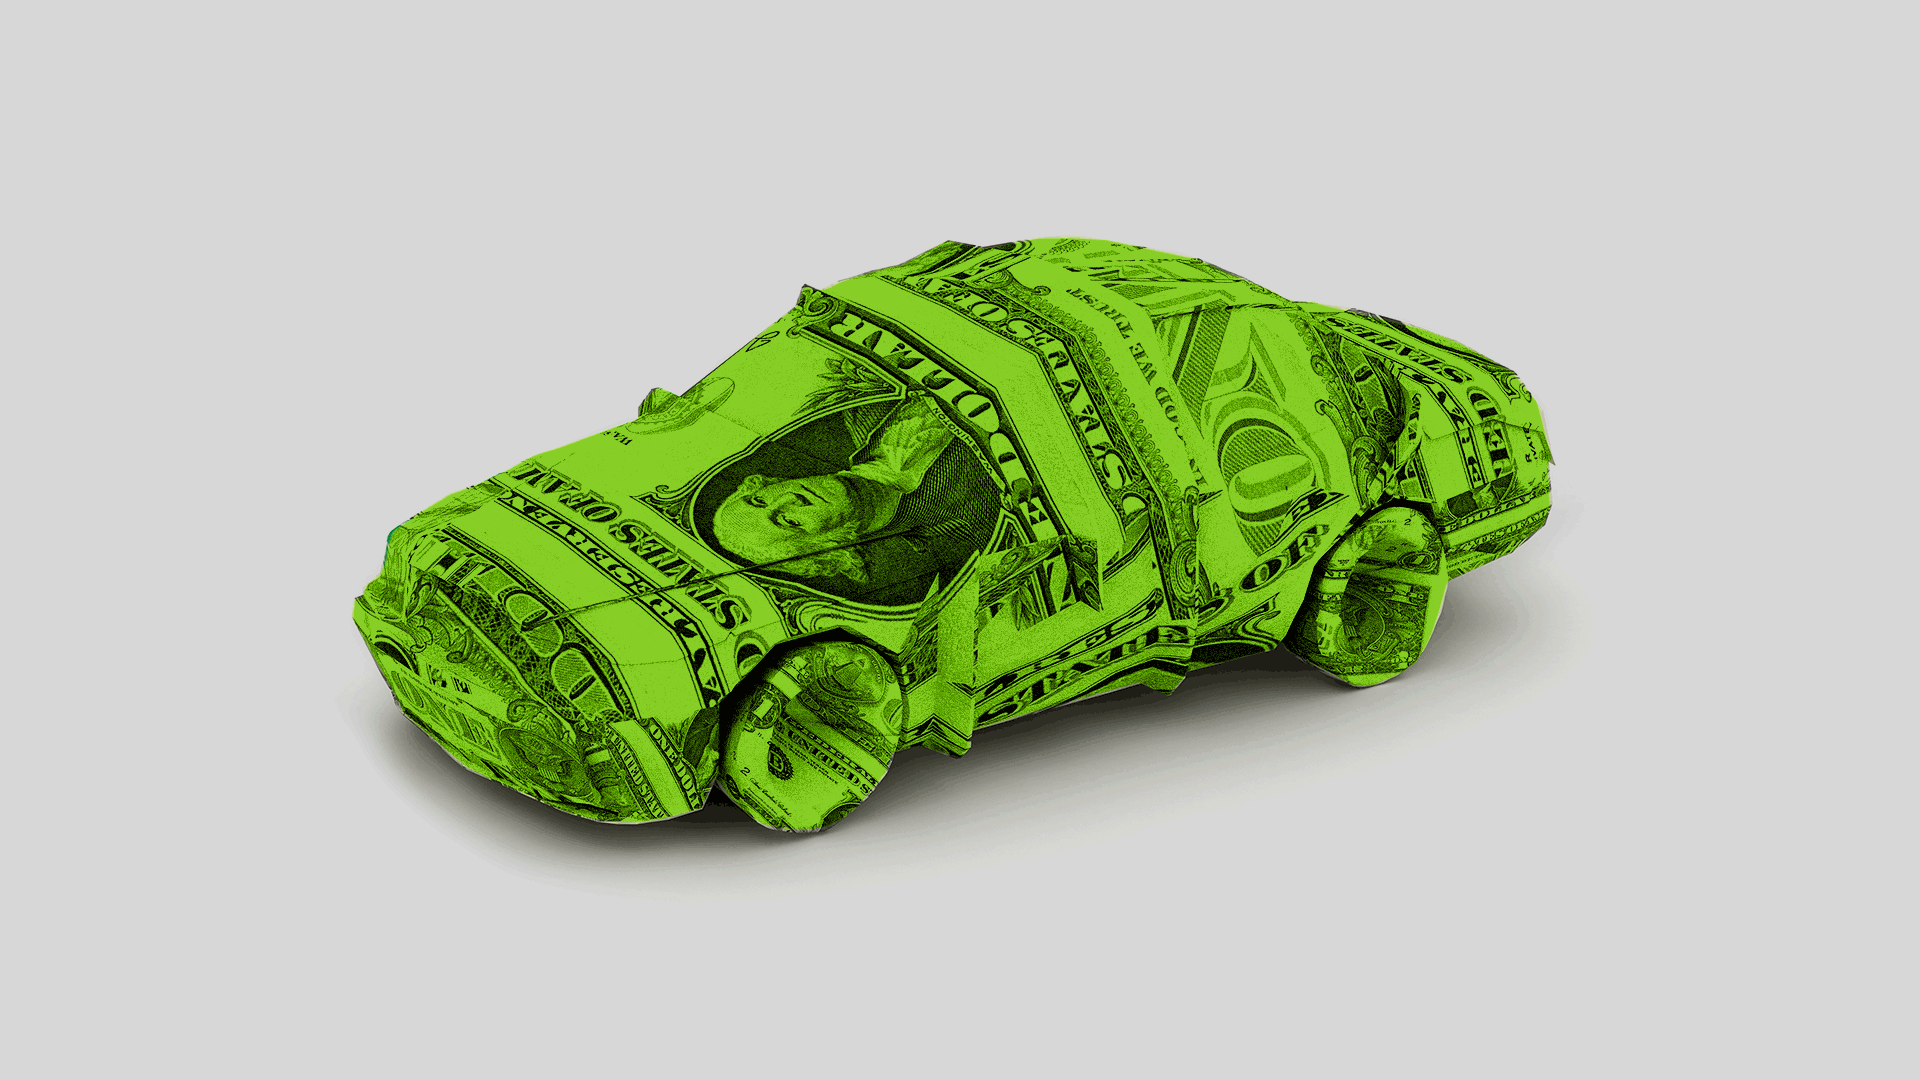 Car made of money